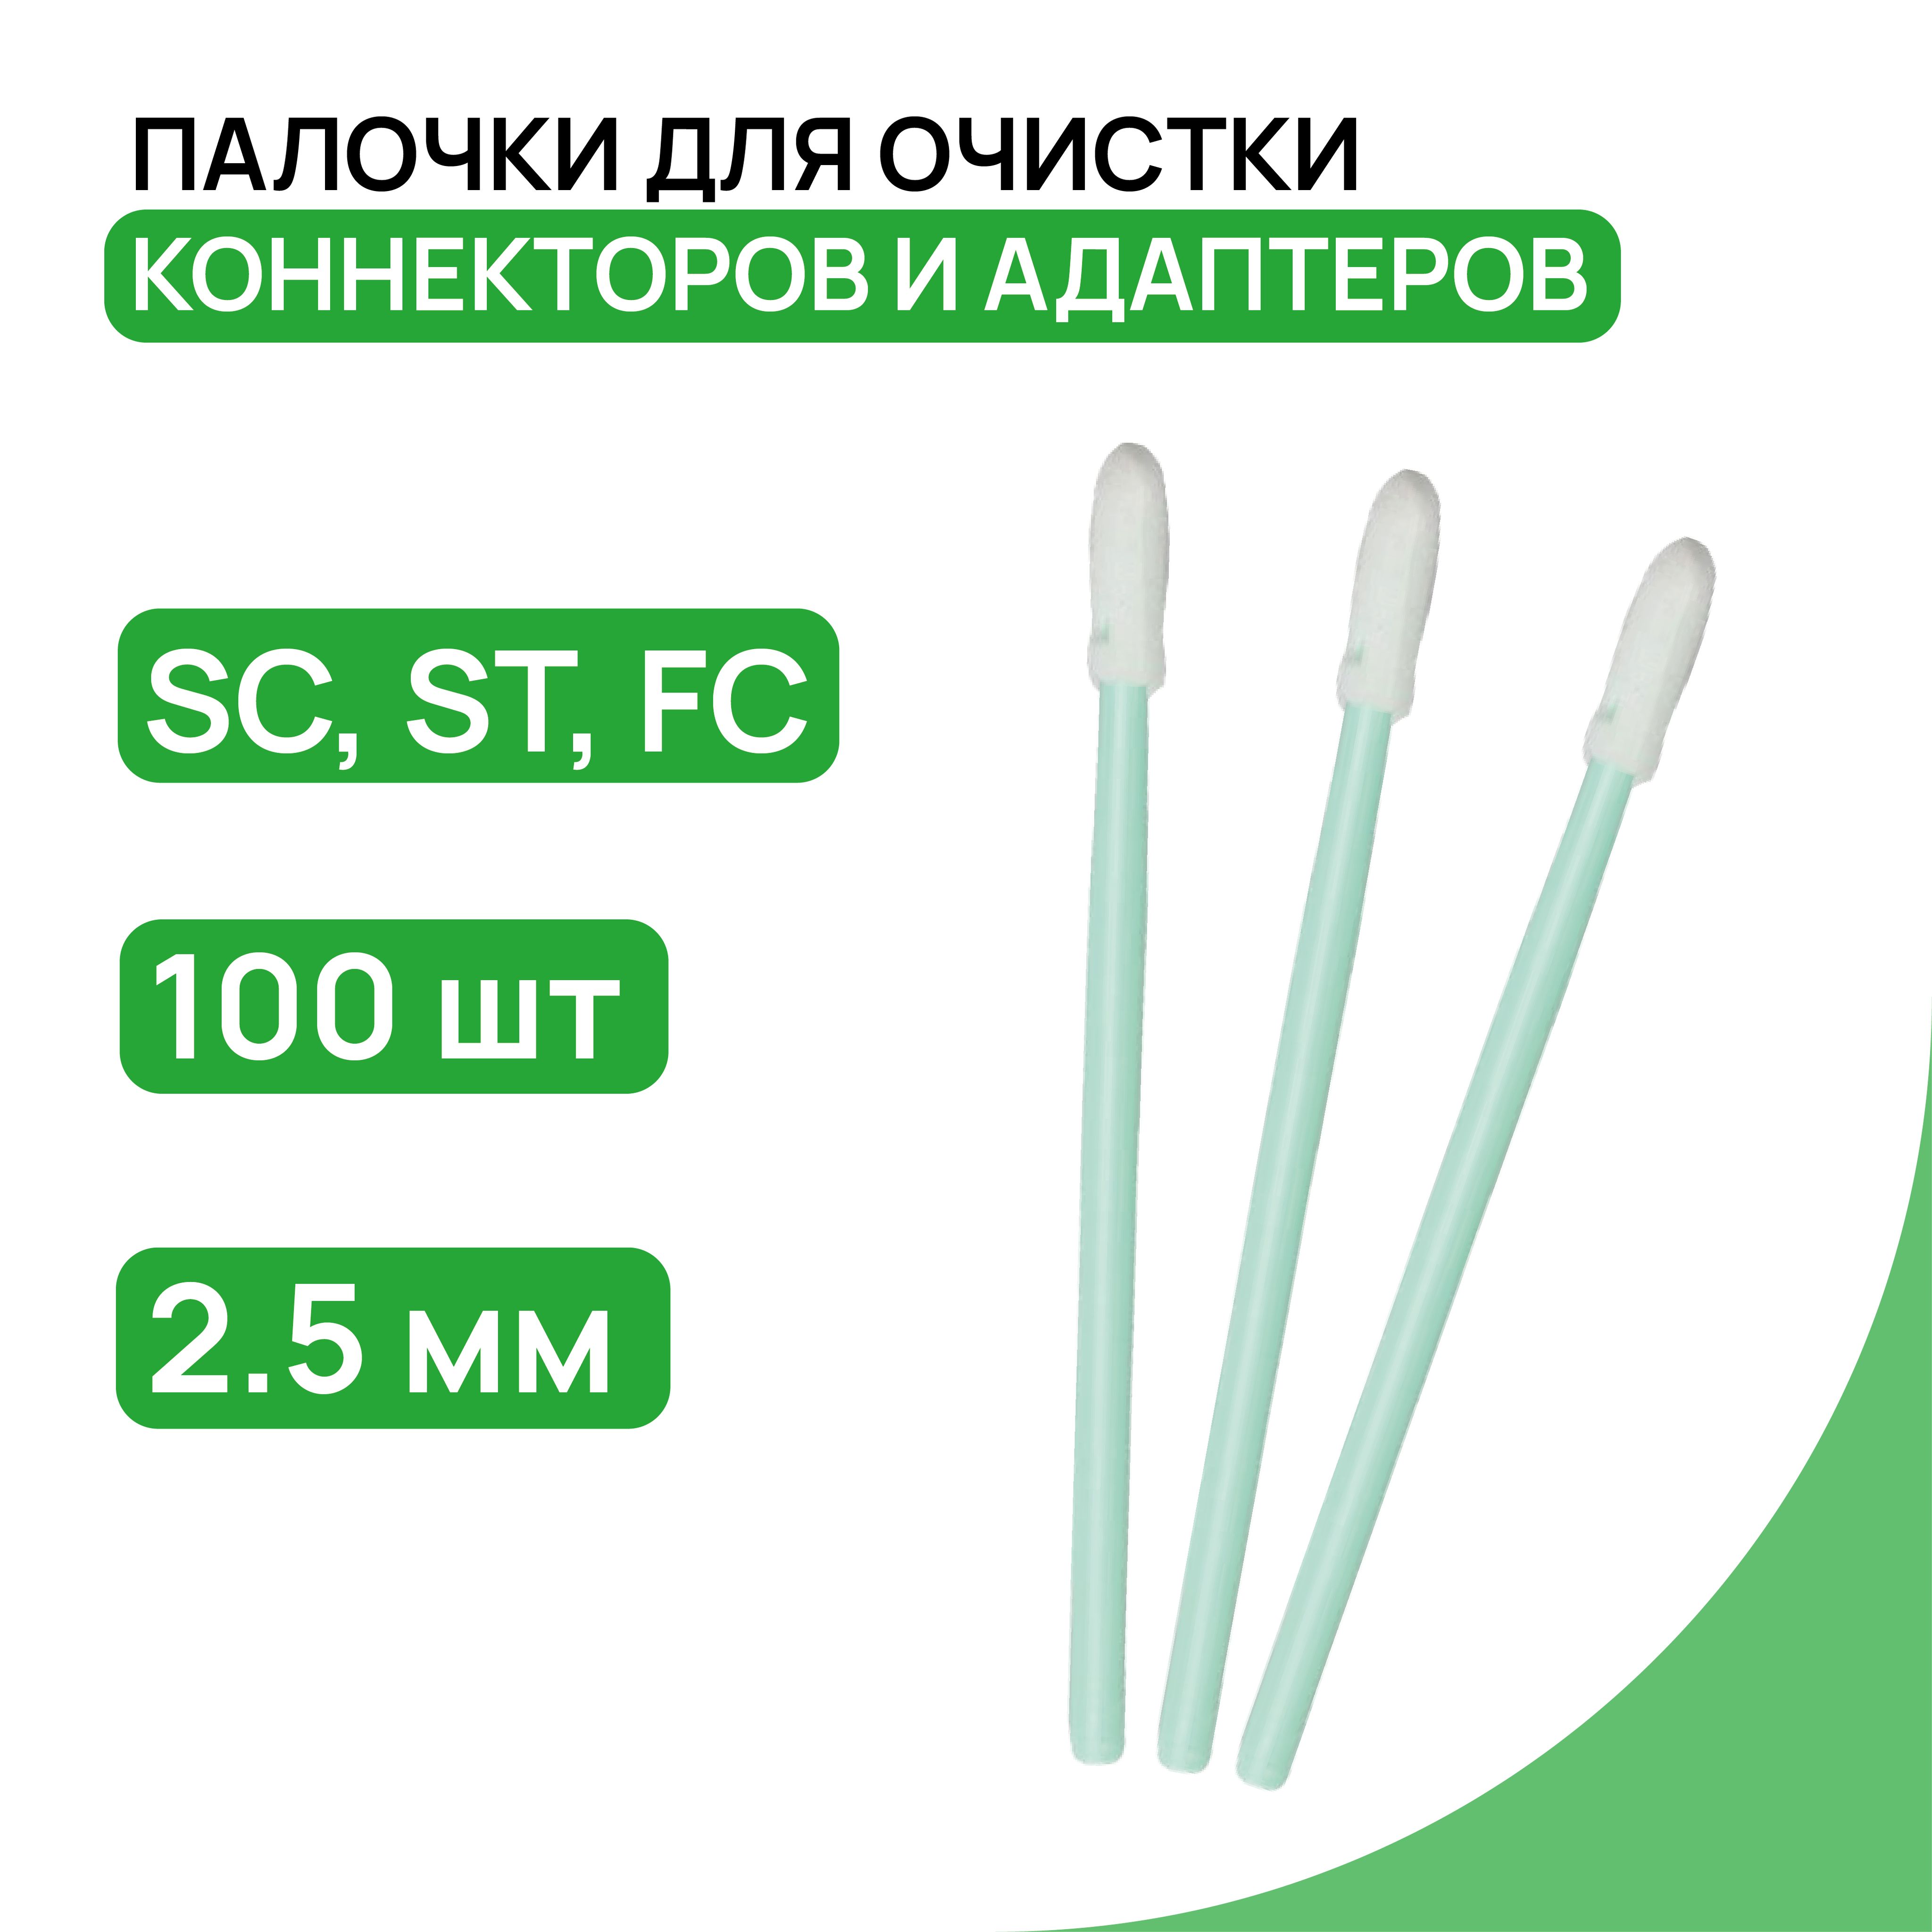 Палочкидляочисткиконнекторов(SC,ST,FC),адаптеров,печатныхплатилинз,изнетканогоматериала,(2.5мм)100штуквупаковке